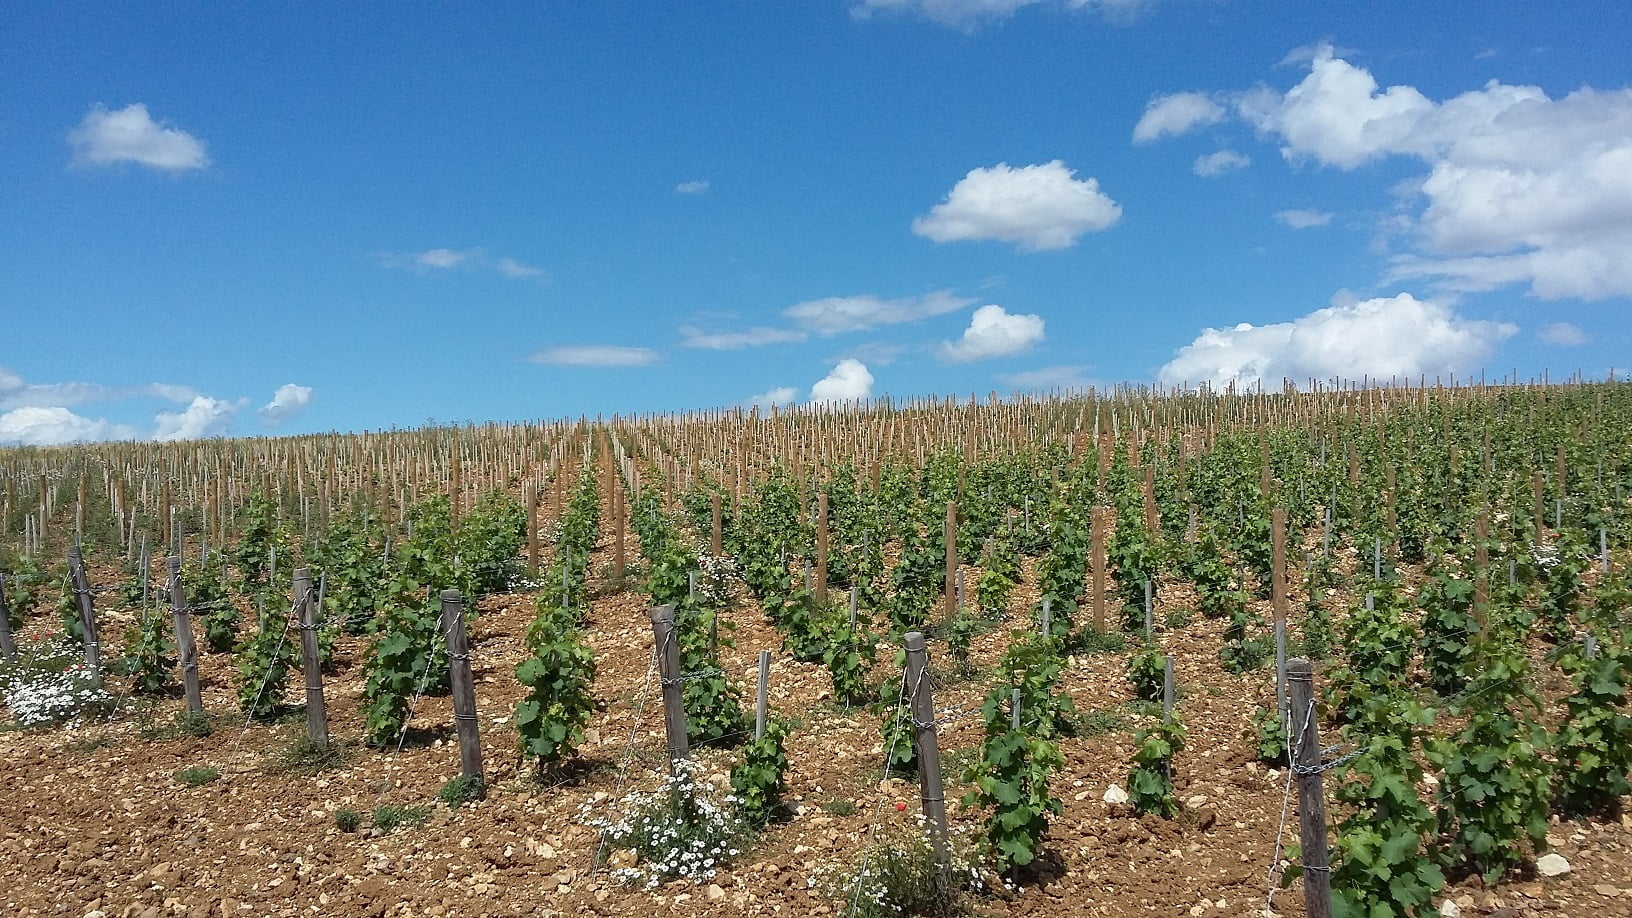 Les vignerons ligériens mieux armés pour l’avenir grâce à la recherche sur le sauvignon